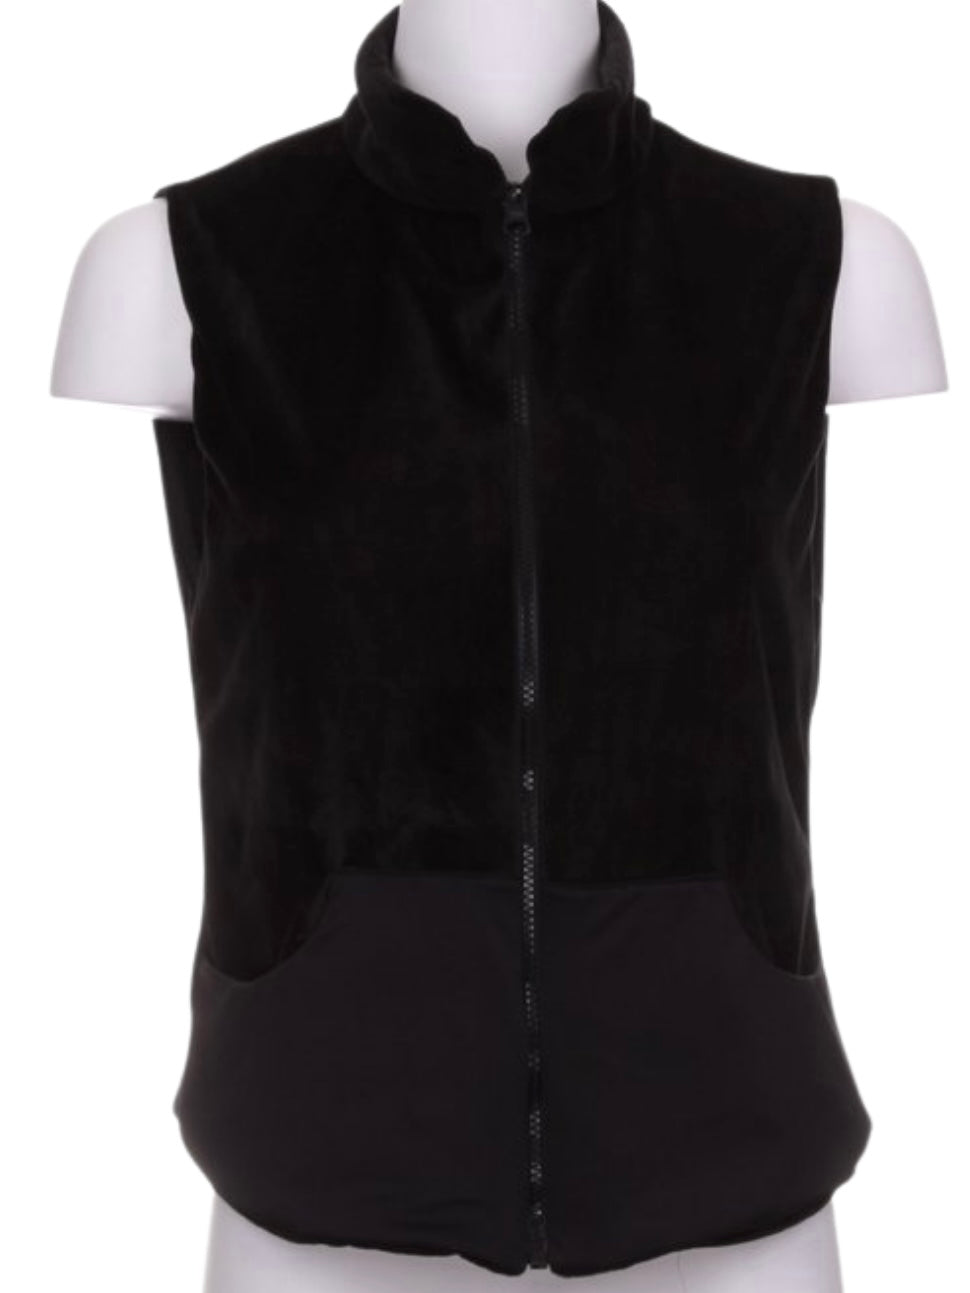 Soft Black on Black Velvet Reversible Vest - I LOVE MY DOUBLES PARTNER!!!